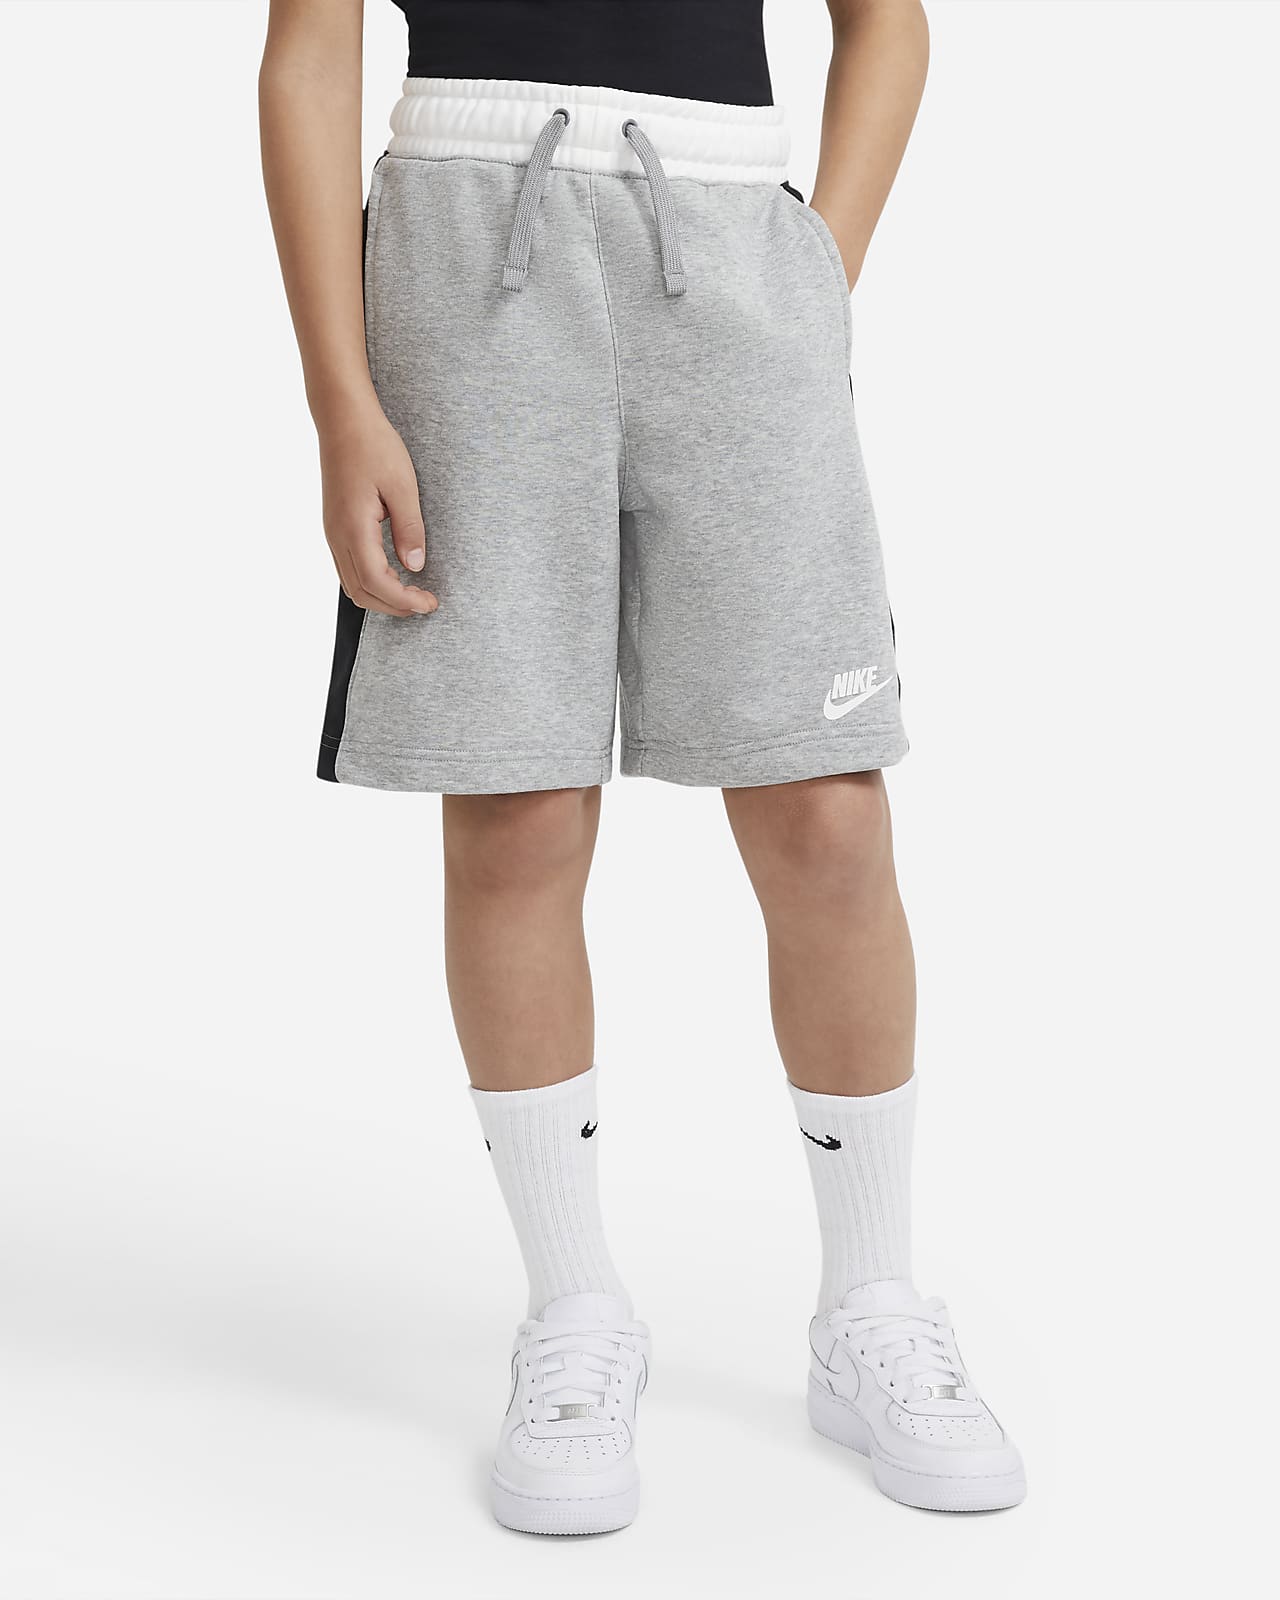 nike grey shorts kids